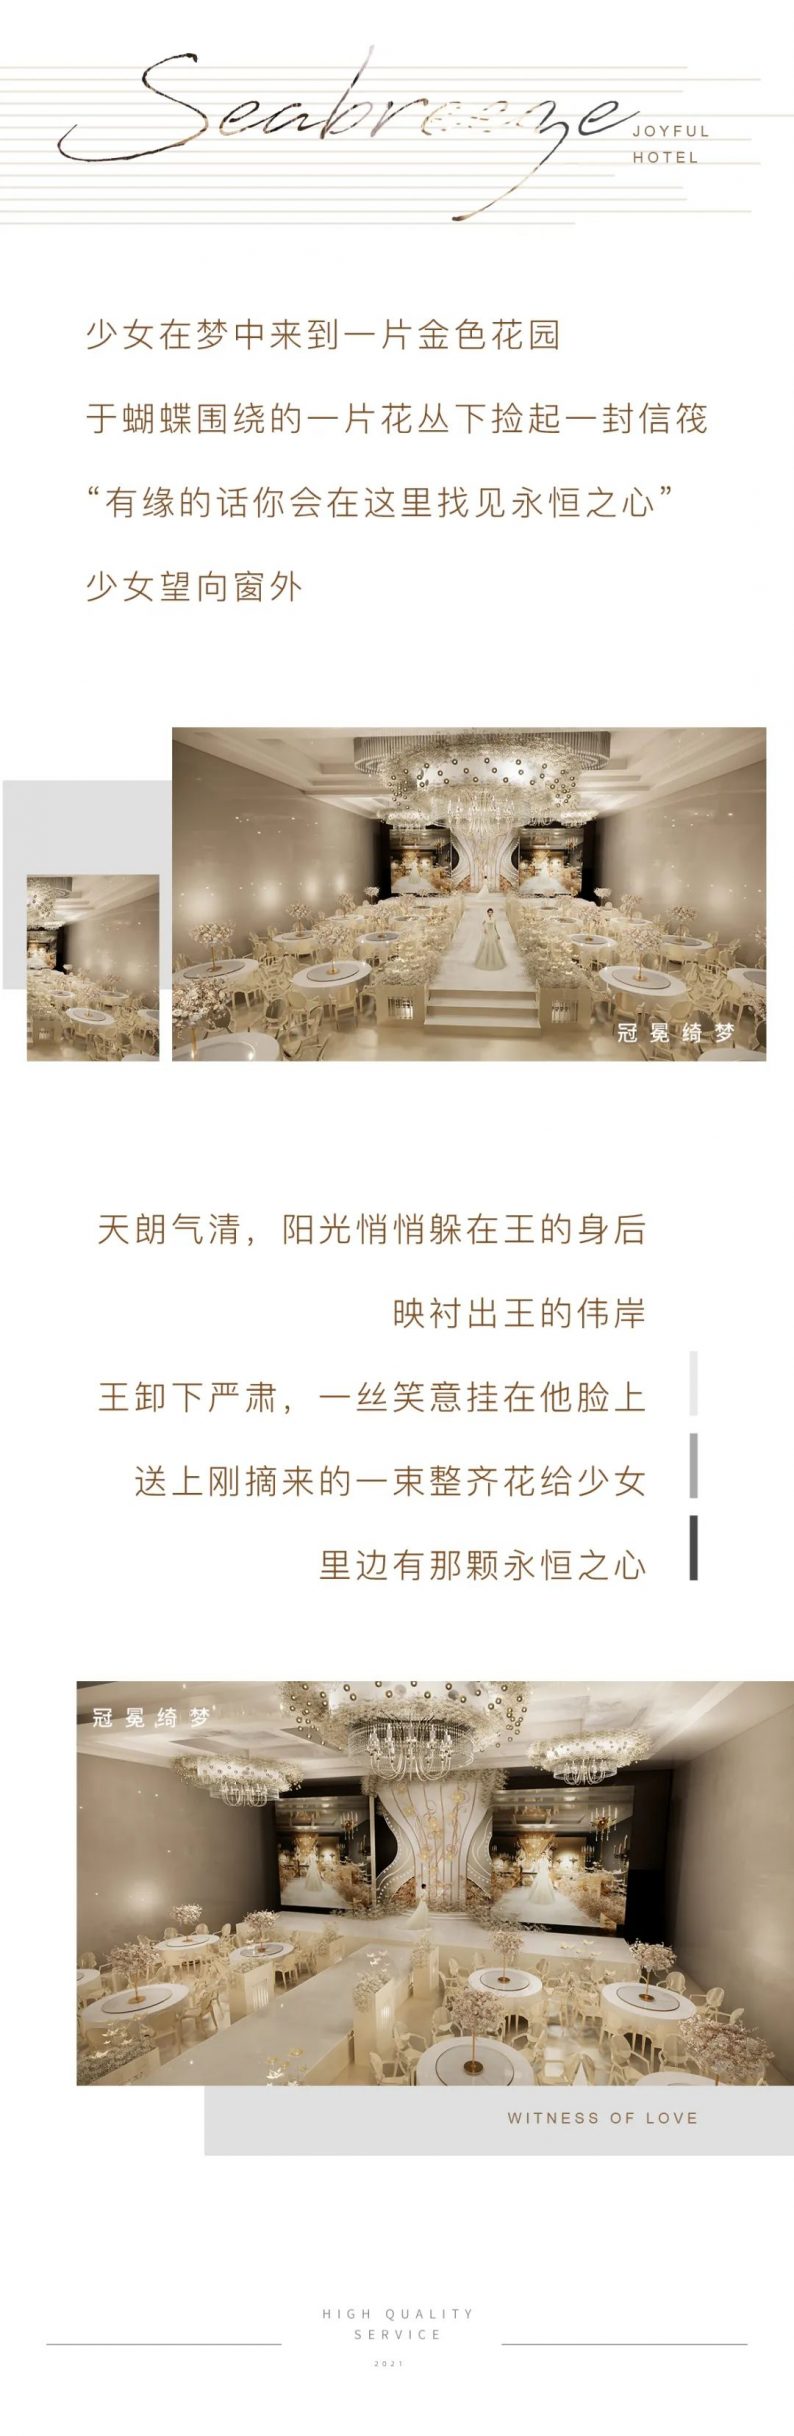 婚礼堂发布：沈阳禧悦婚礼艺术中心全新升级  第13张